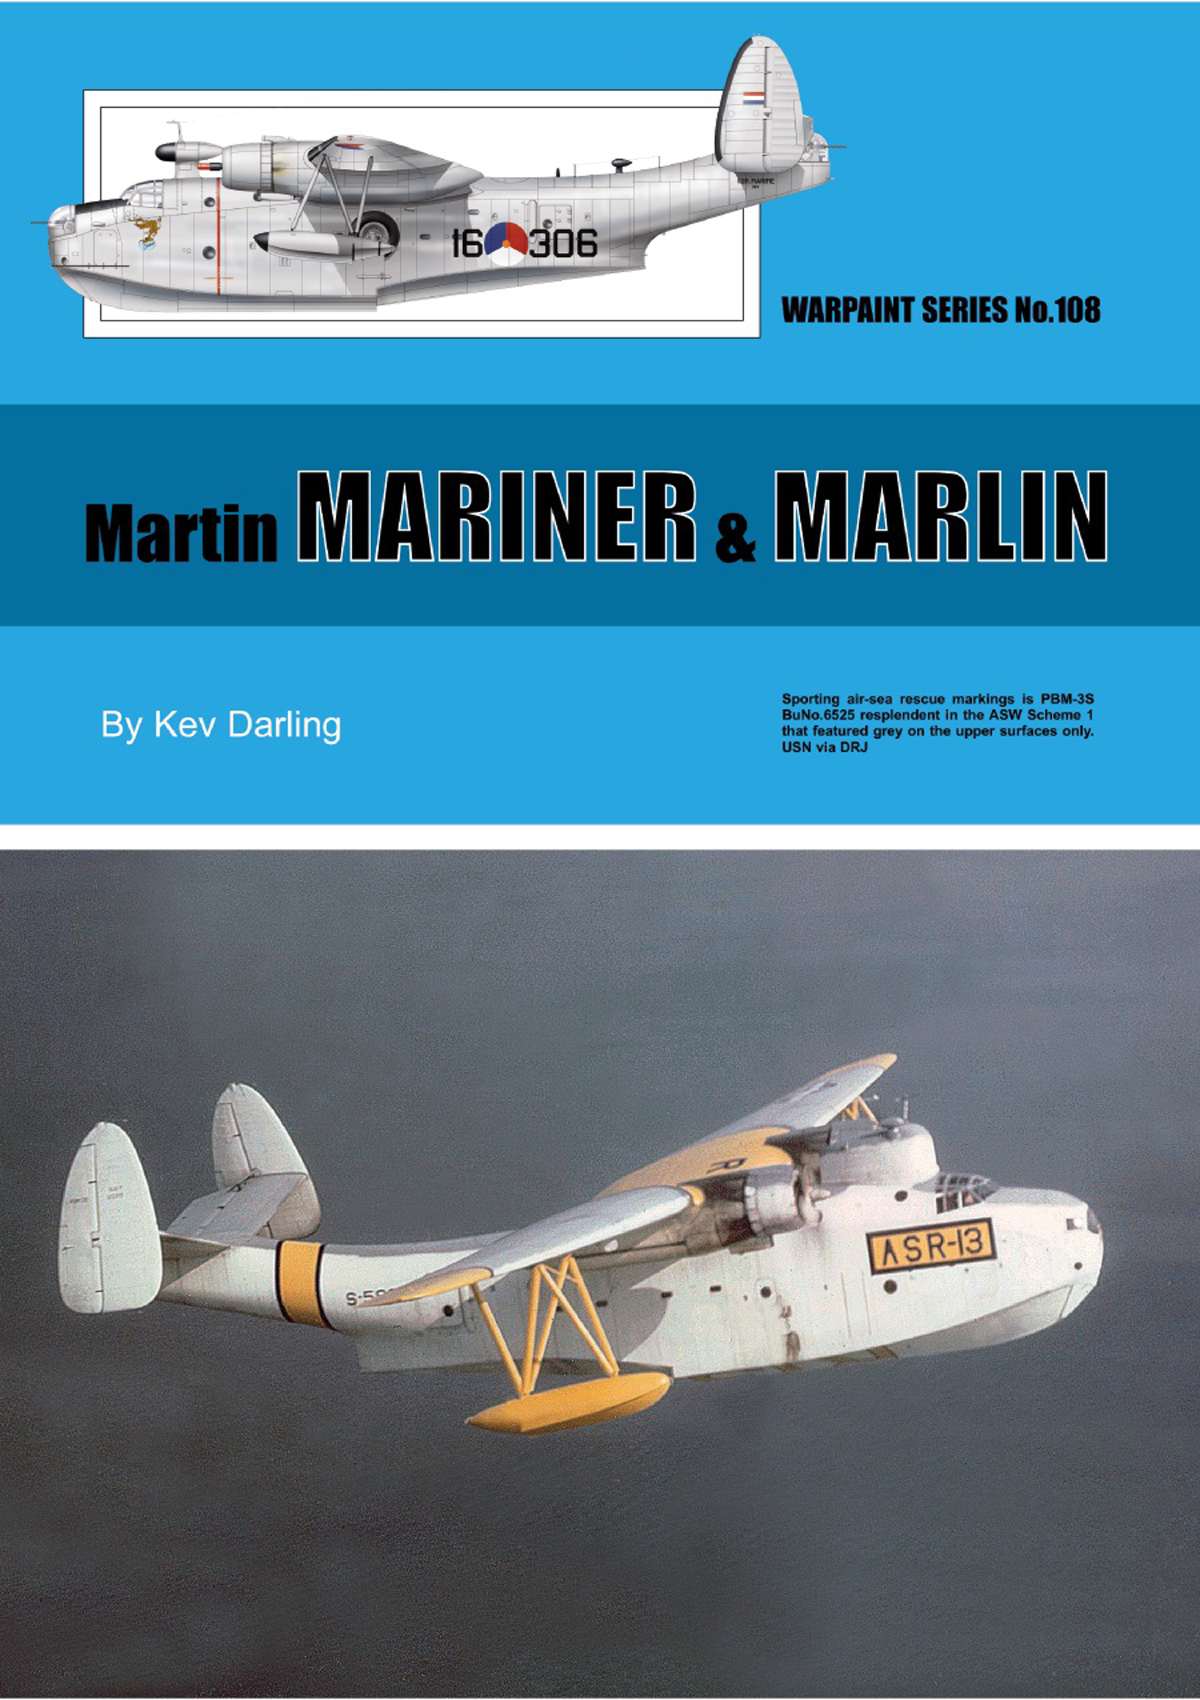 N108 - Martin Mariner & Marlin